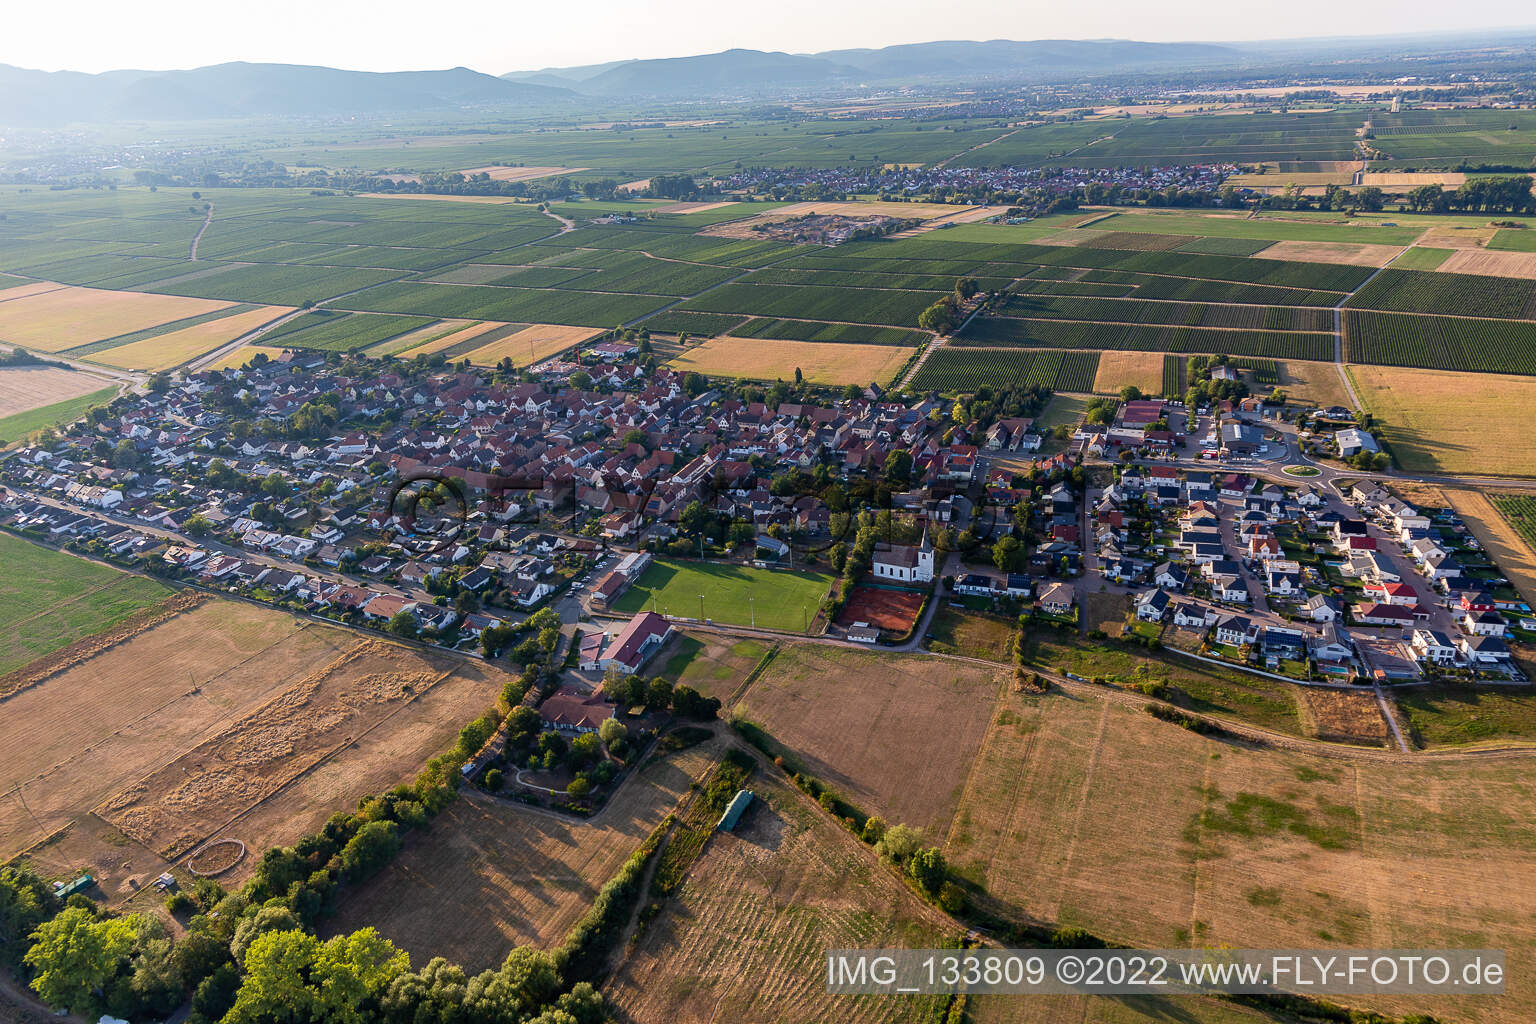 Altdorf im Bundesland Rheinland-Pfalz, Deutschland von einer Drohne aus